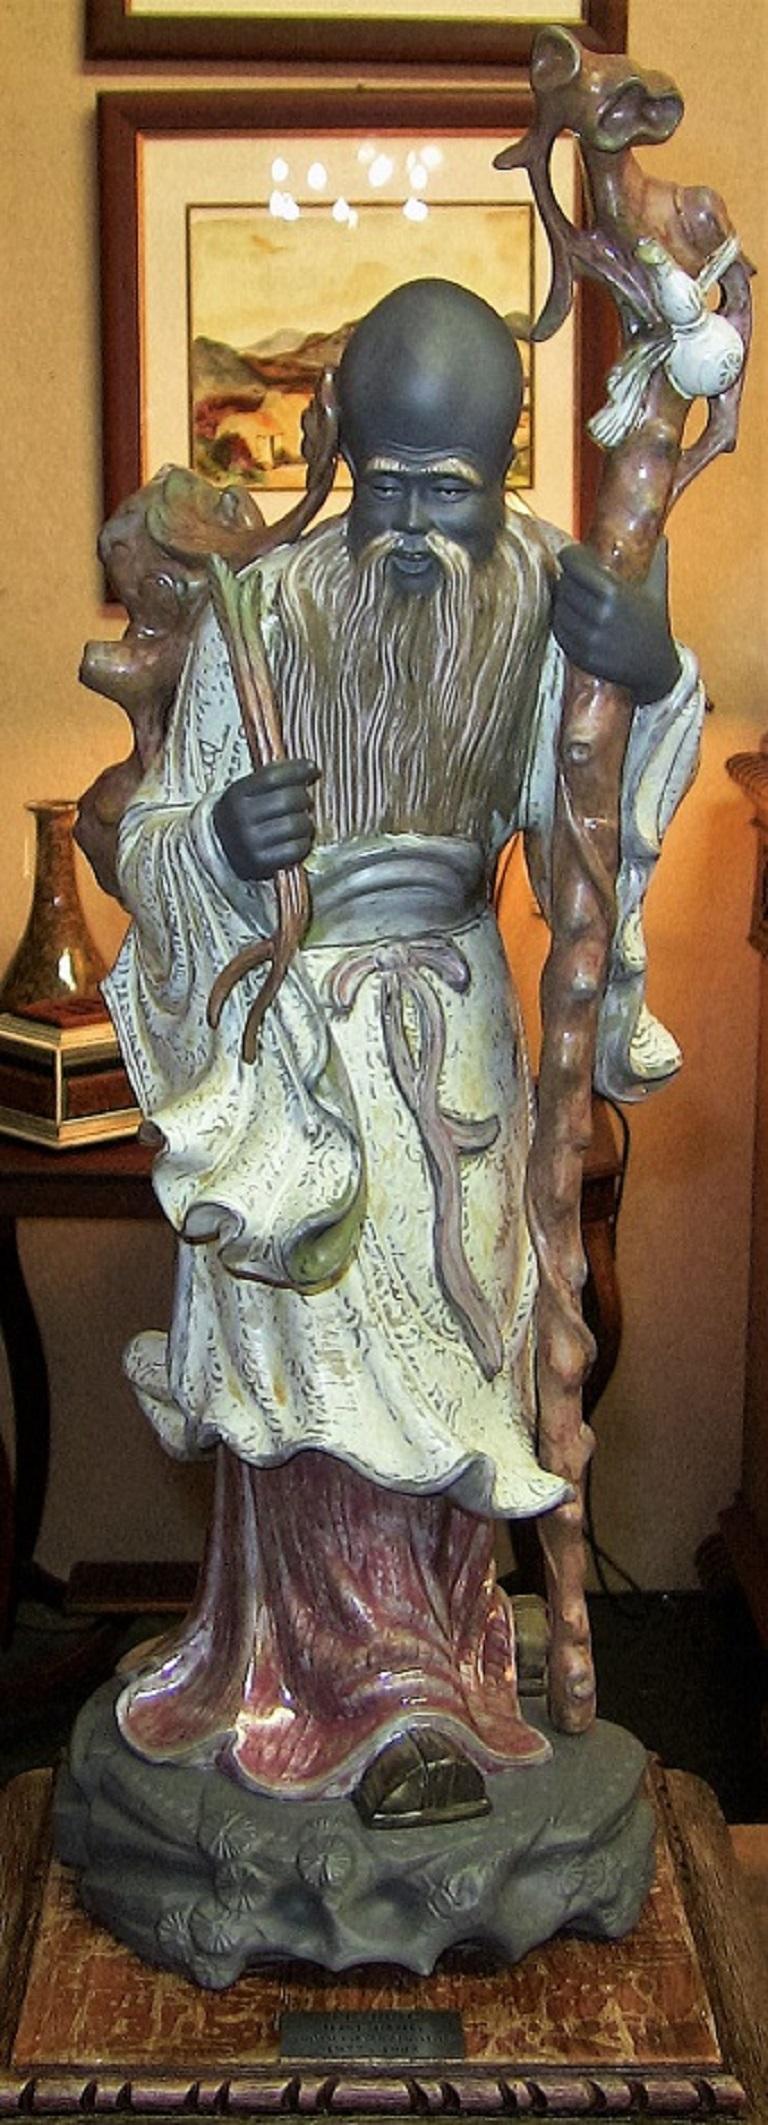 PRÉSENTATION d'une magnifique paire de figurines en porcelaine de Lladro, extrêmement rares et importantes, depuis longtemps retirées du marché.

Connu sous le nom de 